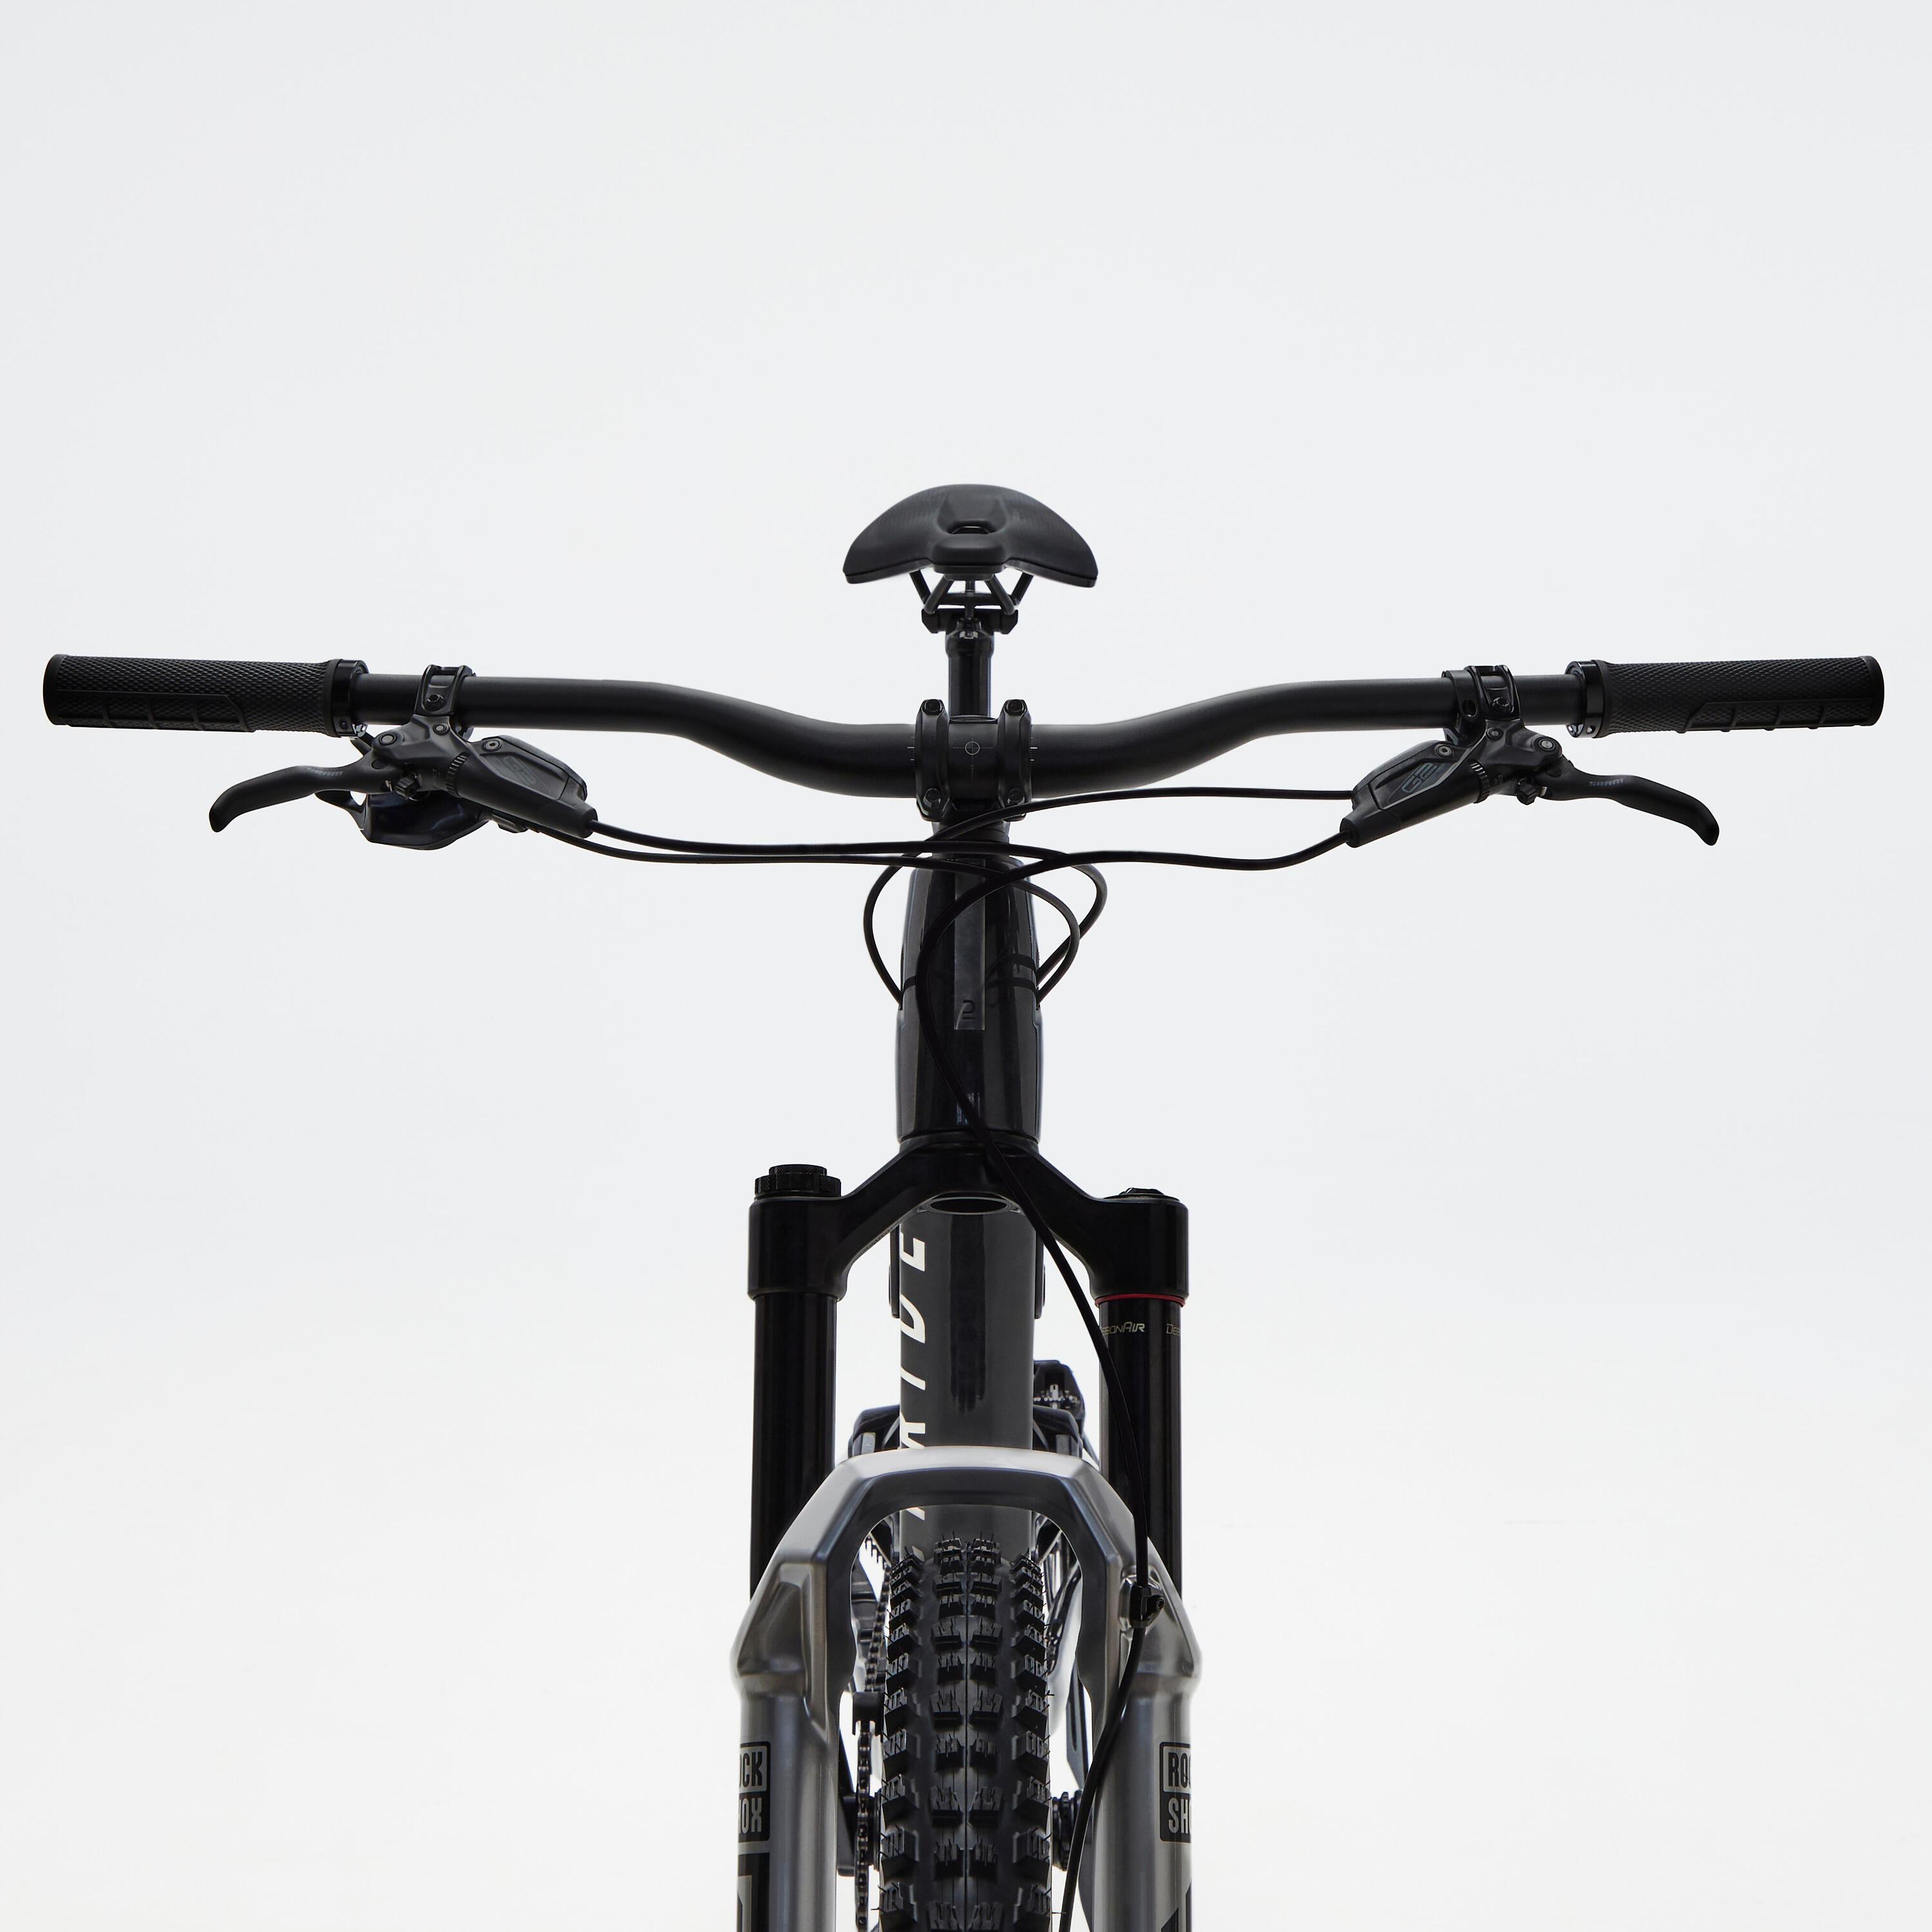 Carbon frame, adjustable suspension mountain bike, black 7/11